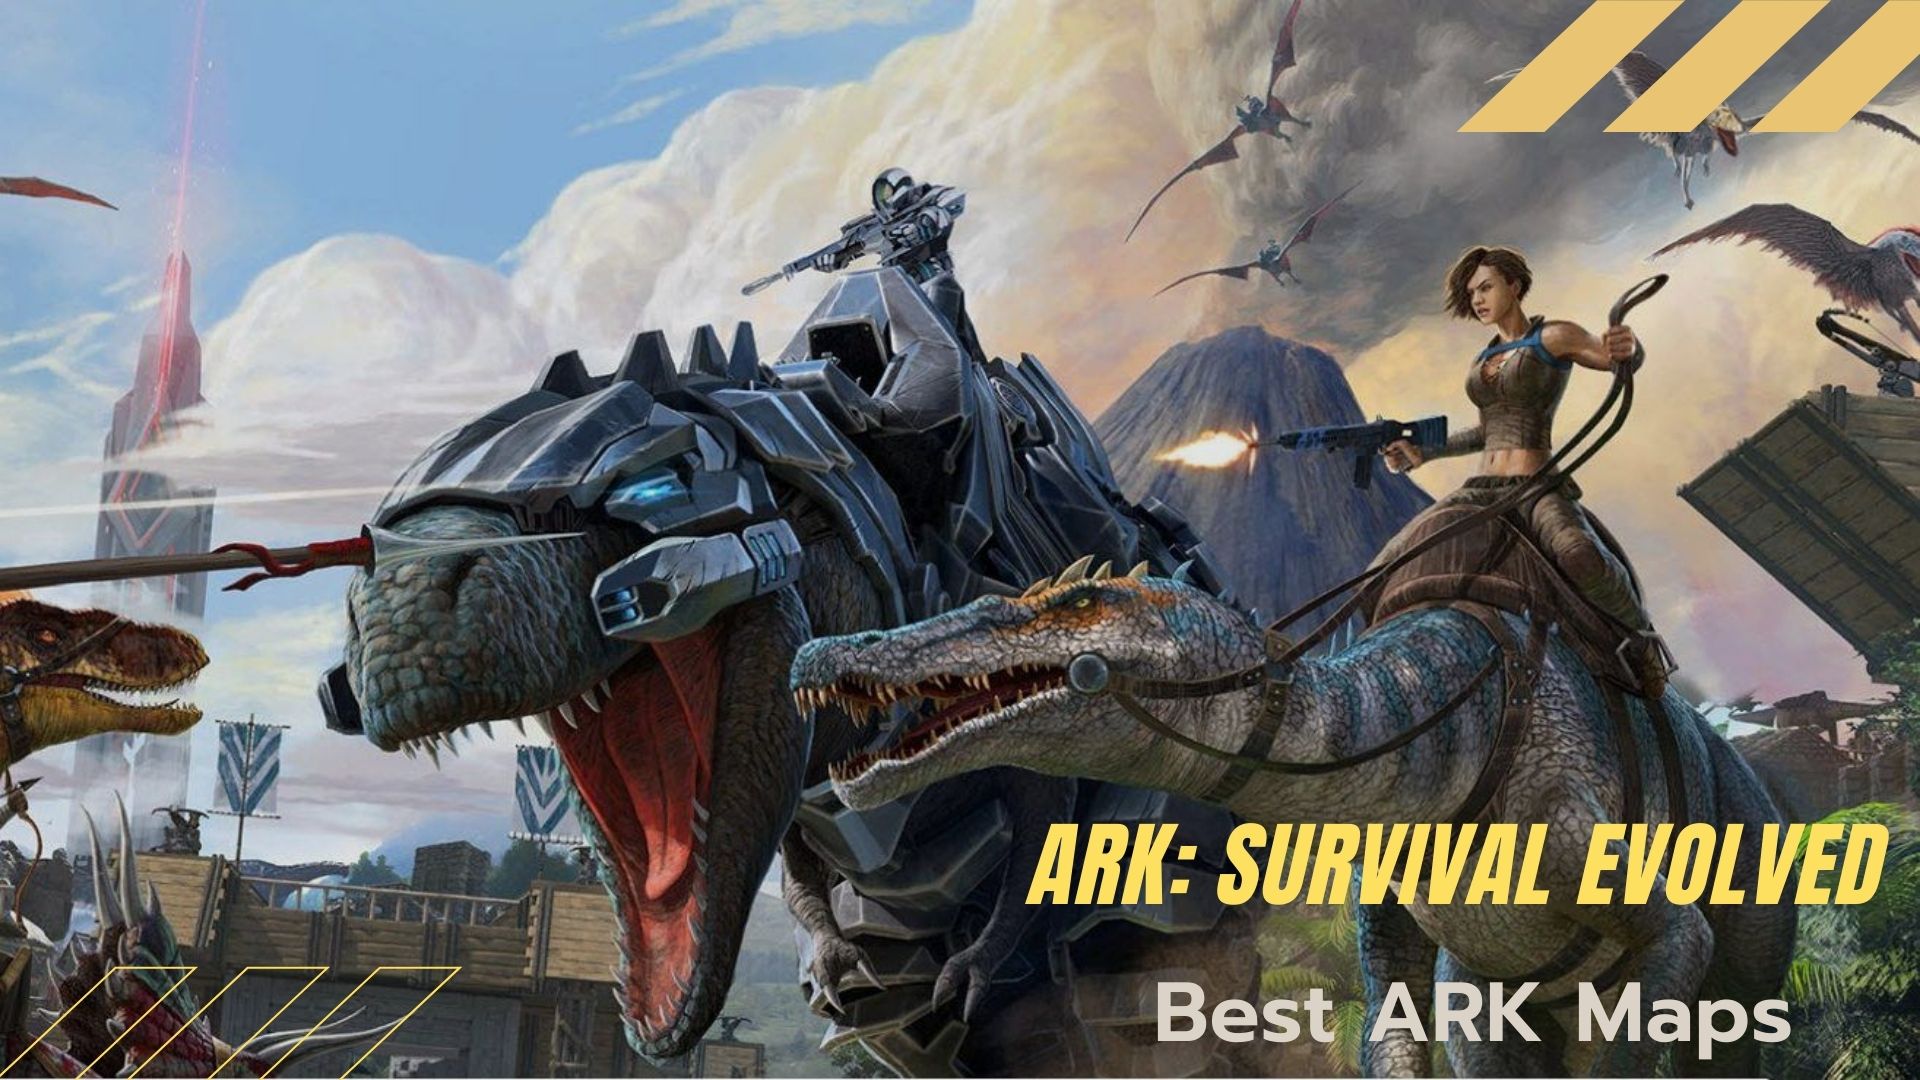 Better ark